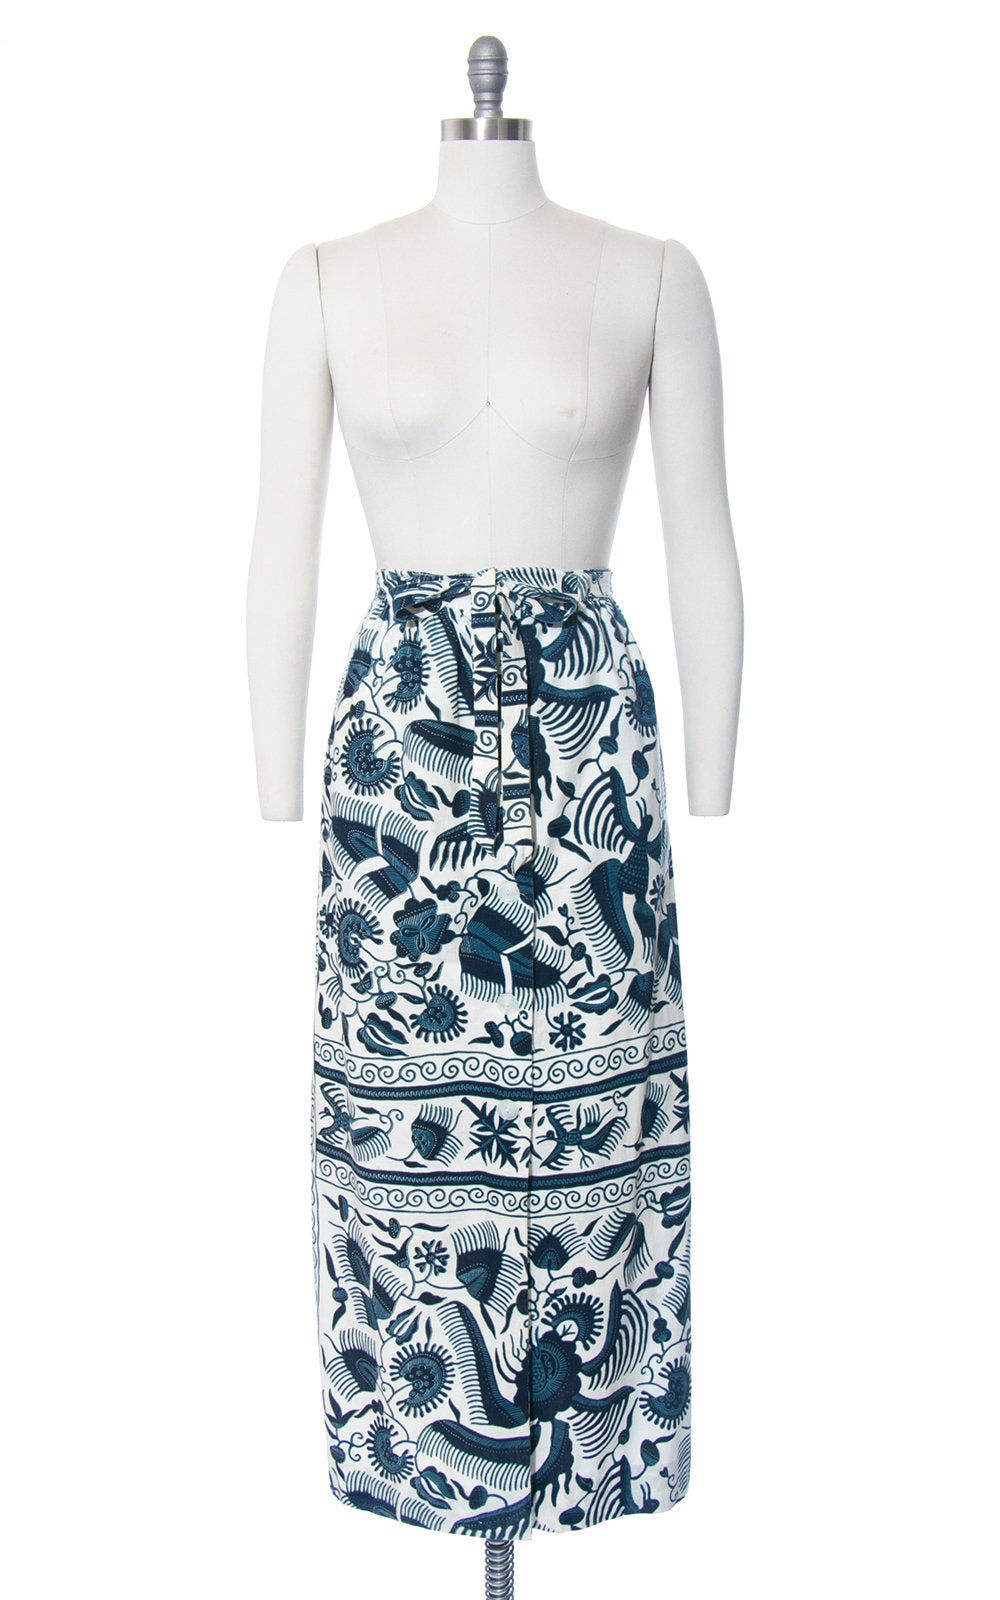 Vintage 1970s Skirt | 70s Floral Bird Batik Print Cotton Button Up Blue Cream Belted High Waisted Boho Maxi Skirt (medium)